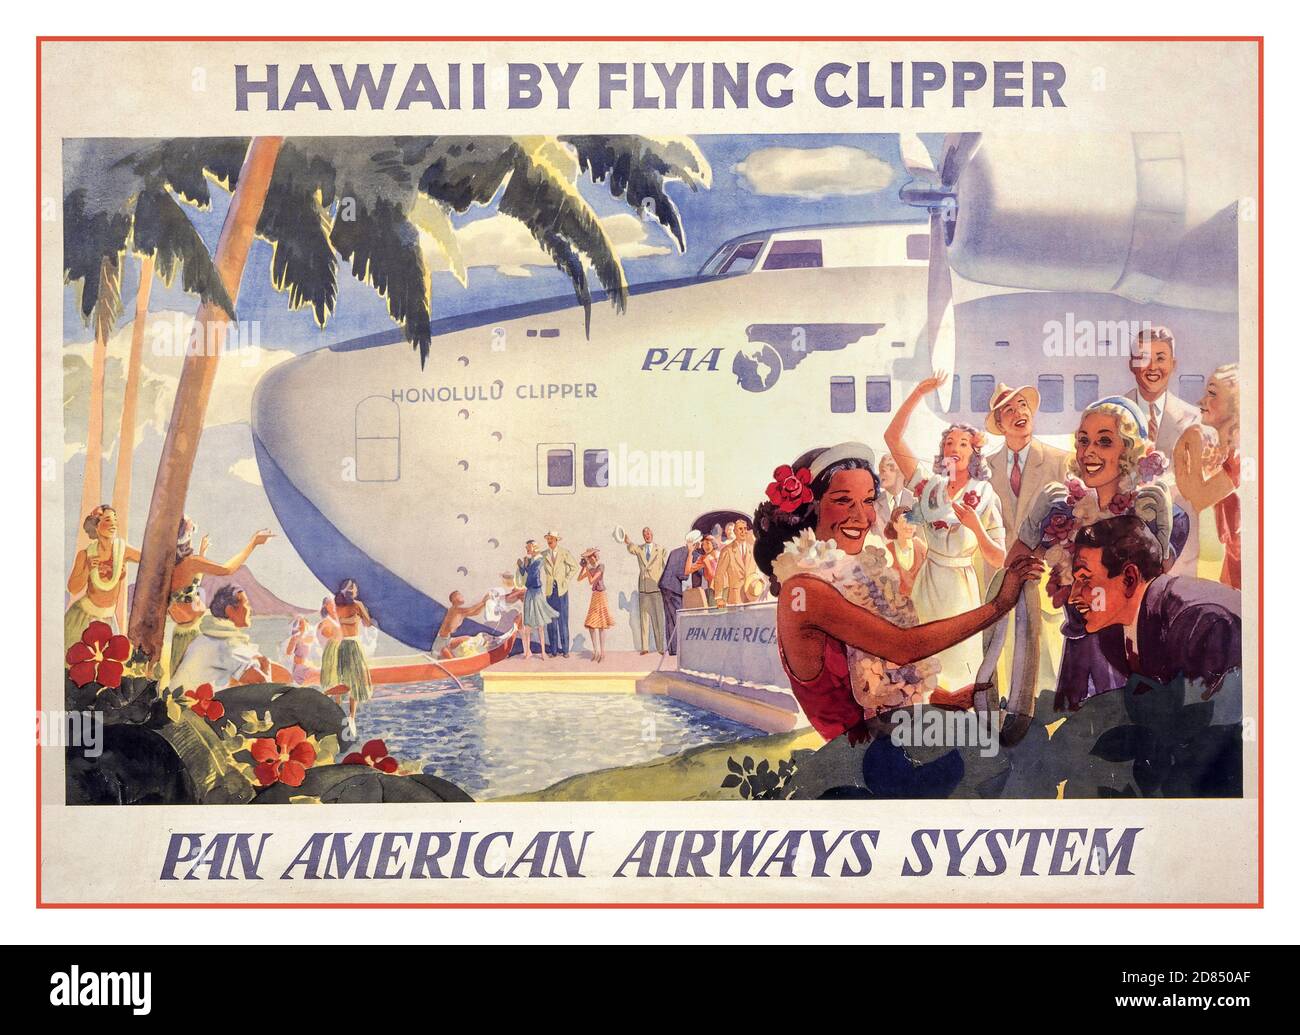 Vintage 1930er Jahre Aviation Travel Poster Hawaii von fliegenden Klipper--Pan American Airways System [ca. 1938] Lithographie, Farbe. Hawaiianer begrüßen Passagiere, die aus dem Wasserflugzeug aussteigen. Stockfoto